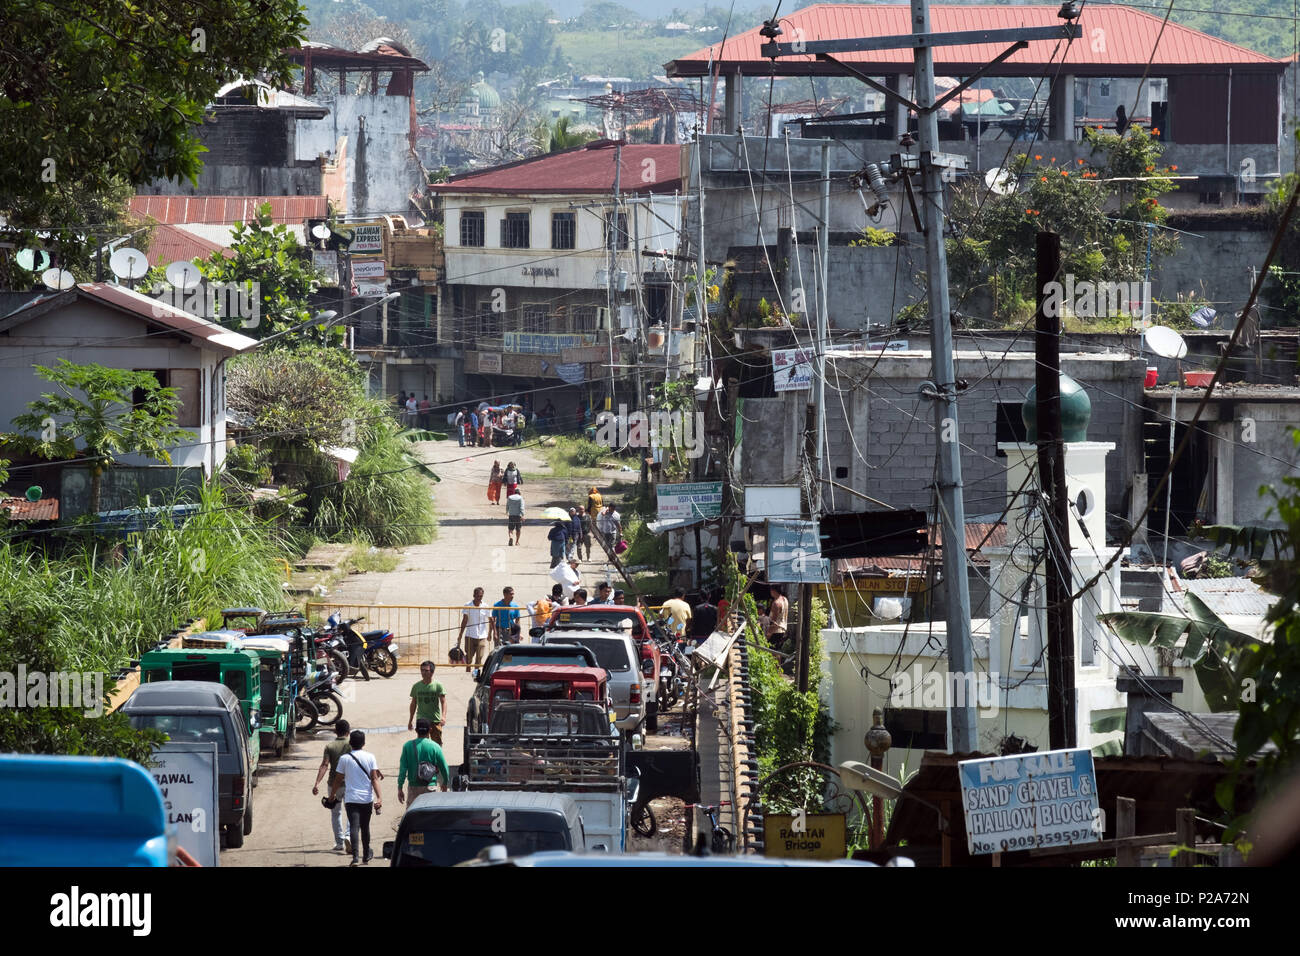 Kreuzung aus der erhaltenen Teile der Marawi - Stadt in die zerstörte Innenstadt (Ground Zero) der Stadt Marawi. Die Bewohner sind nur erlaubt, ihre Habseligkeiten zu Fuß zu bringen. Insel Mindanao, Philippinen - Übergang vom erhaltenen Stadtteilen in die zerstörte Innenstadt (Ground Zero) der Stadt Marawi. Feuerstelle your Lehrredaktion dürfen nur zu Fuß herüber bringen. Insel Mindanao, Philippinen Stockfoto